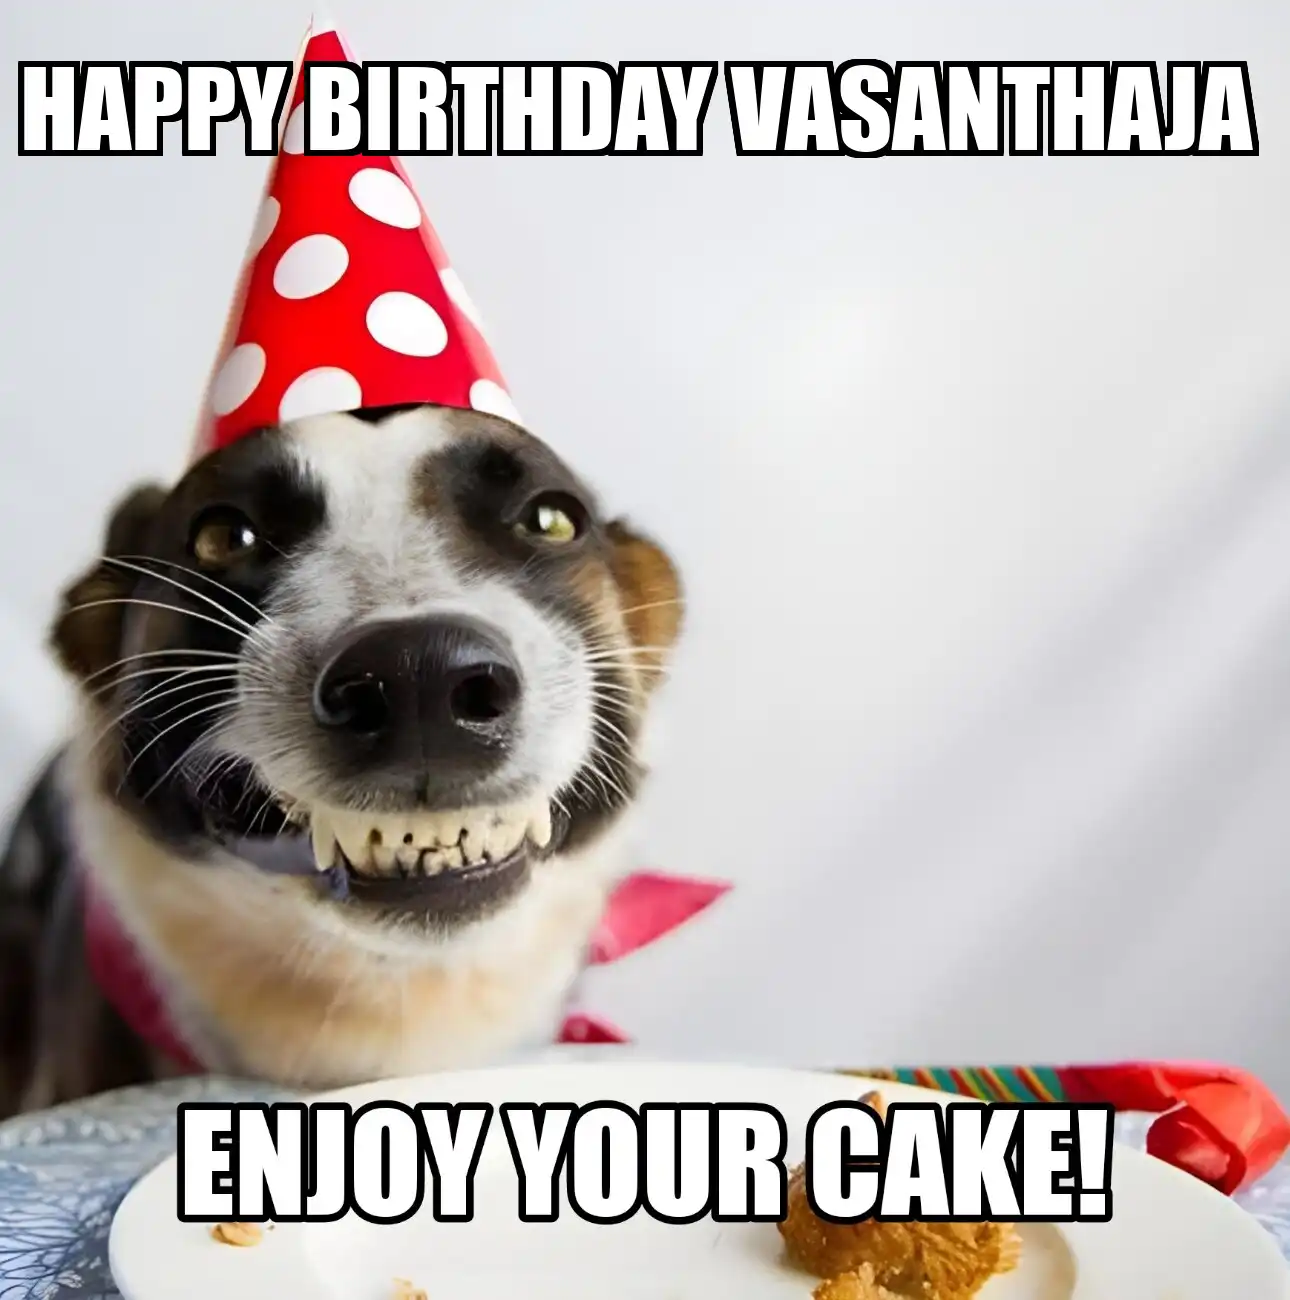 Happy Birthday Vasanthaja Enjoy Your Cake Dog Meme